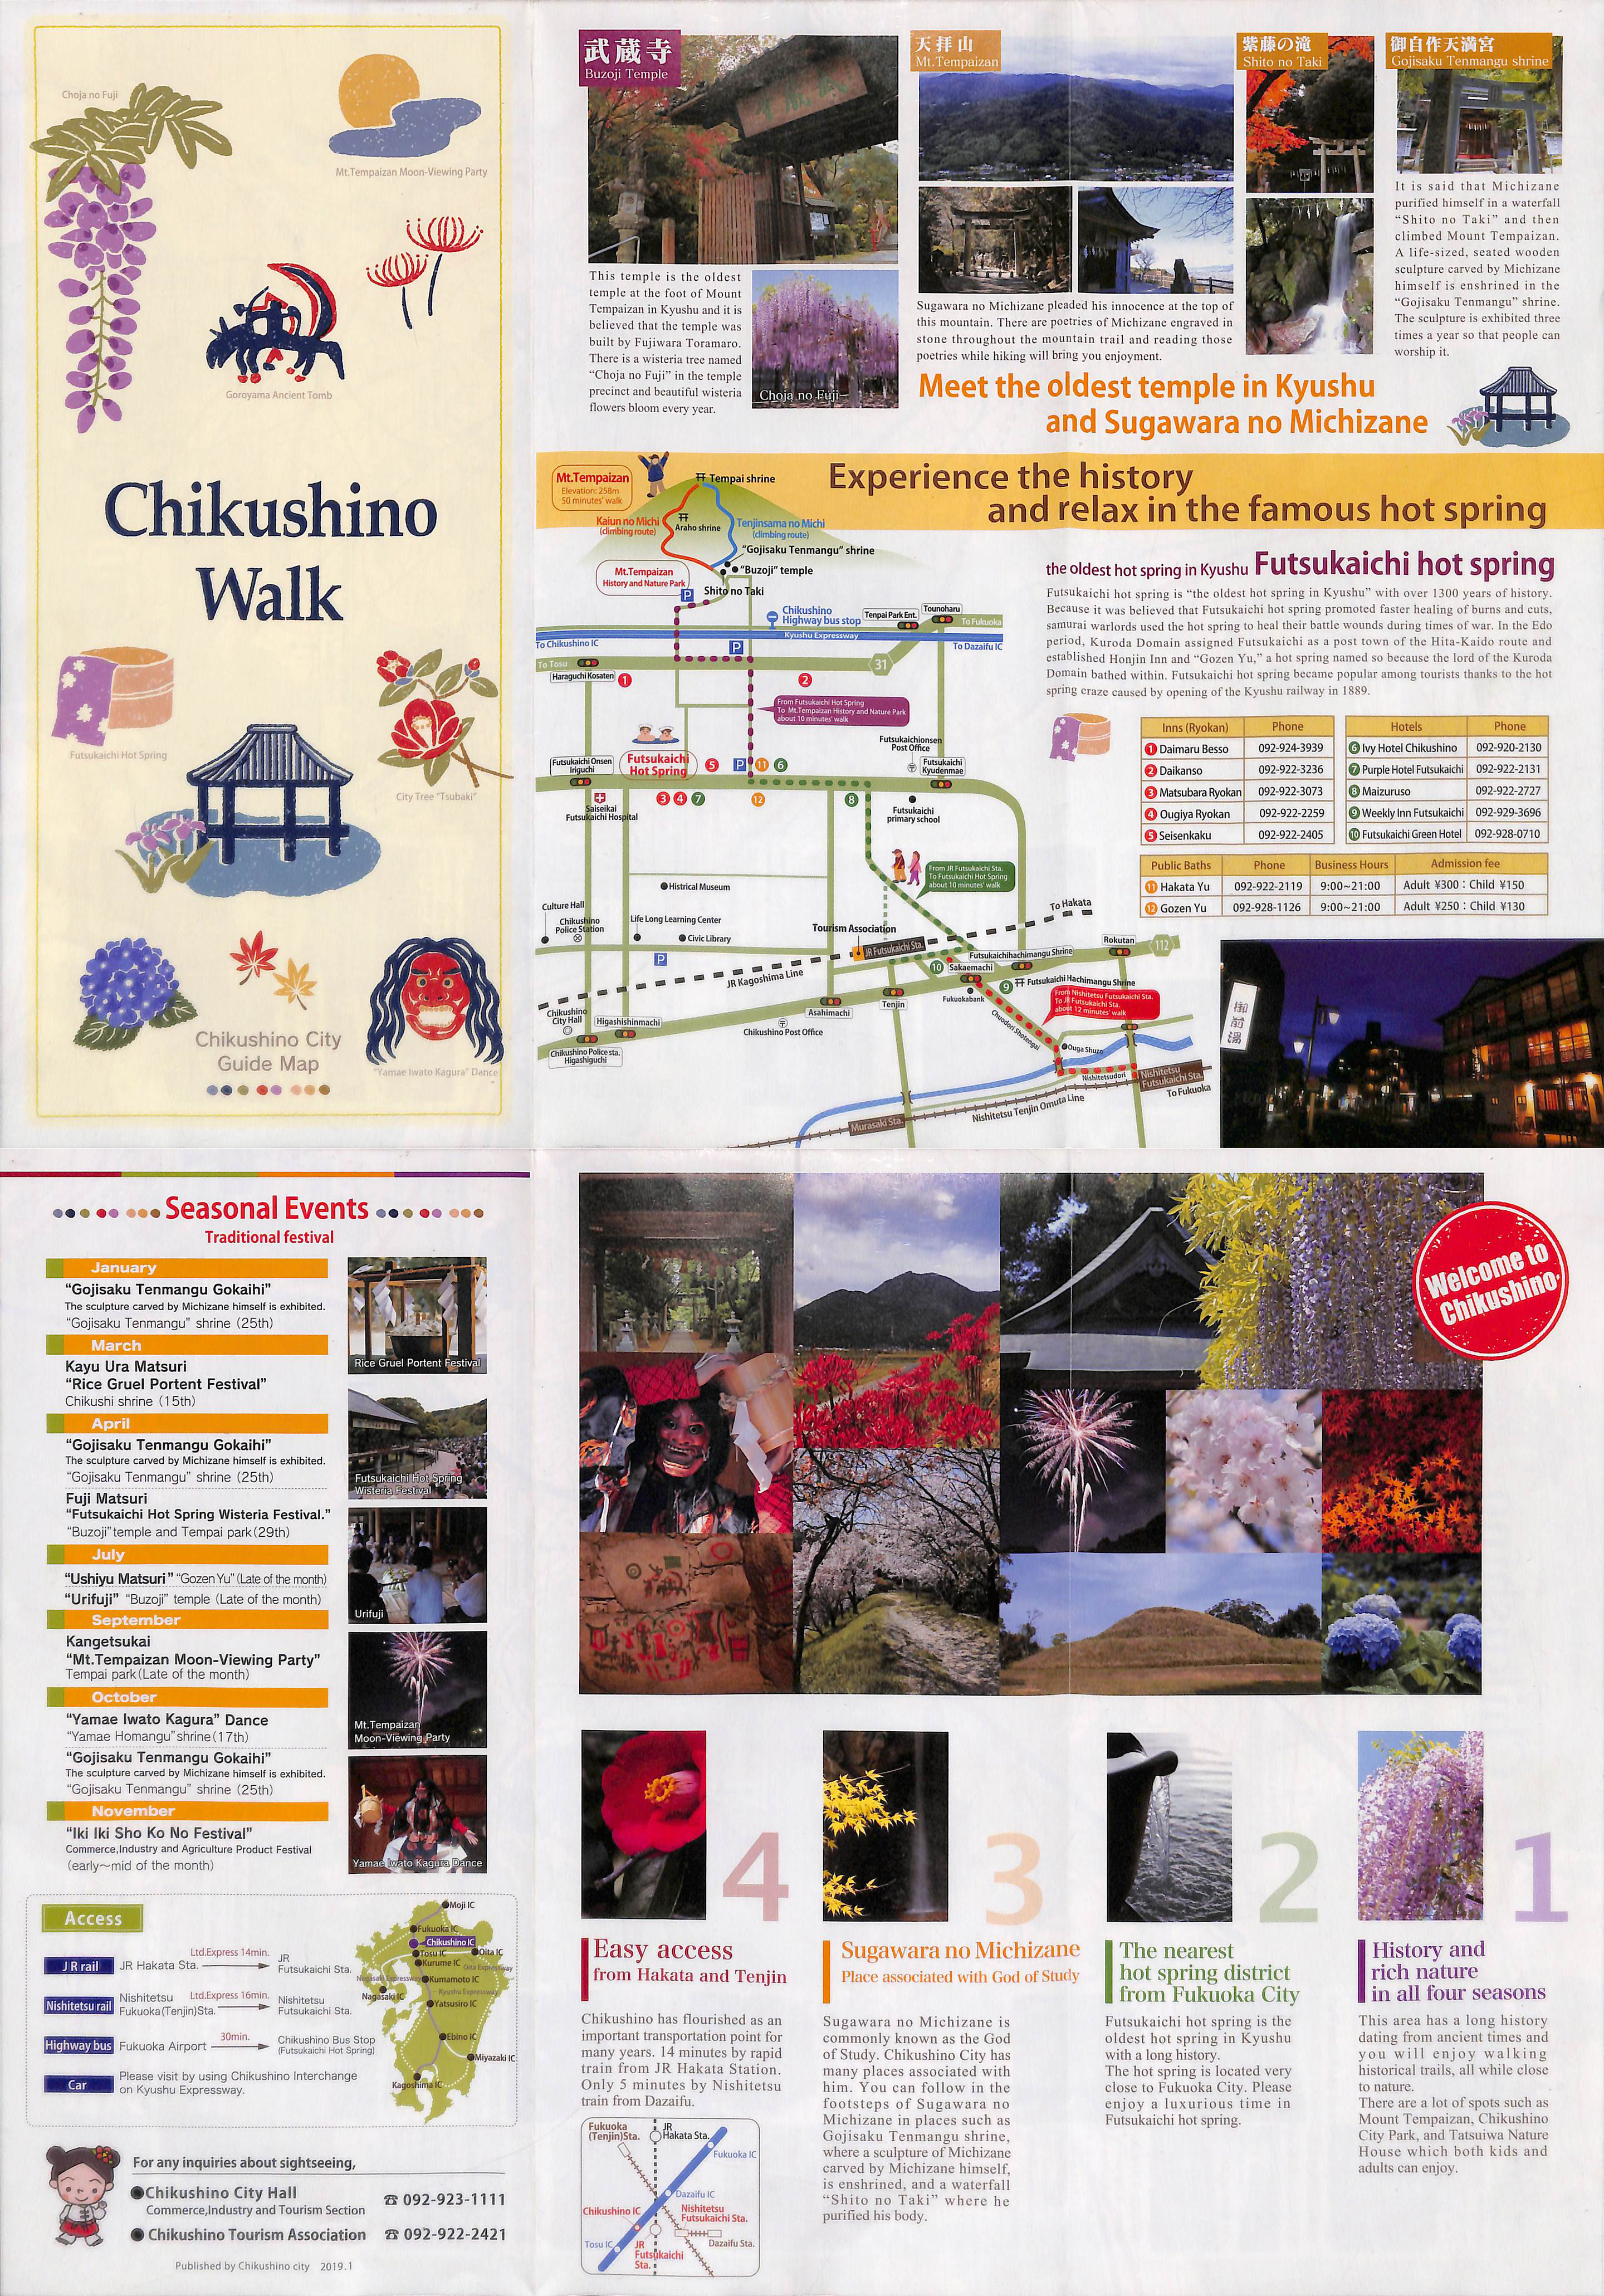 Chikushino Walk